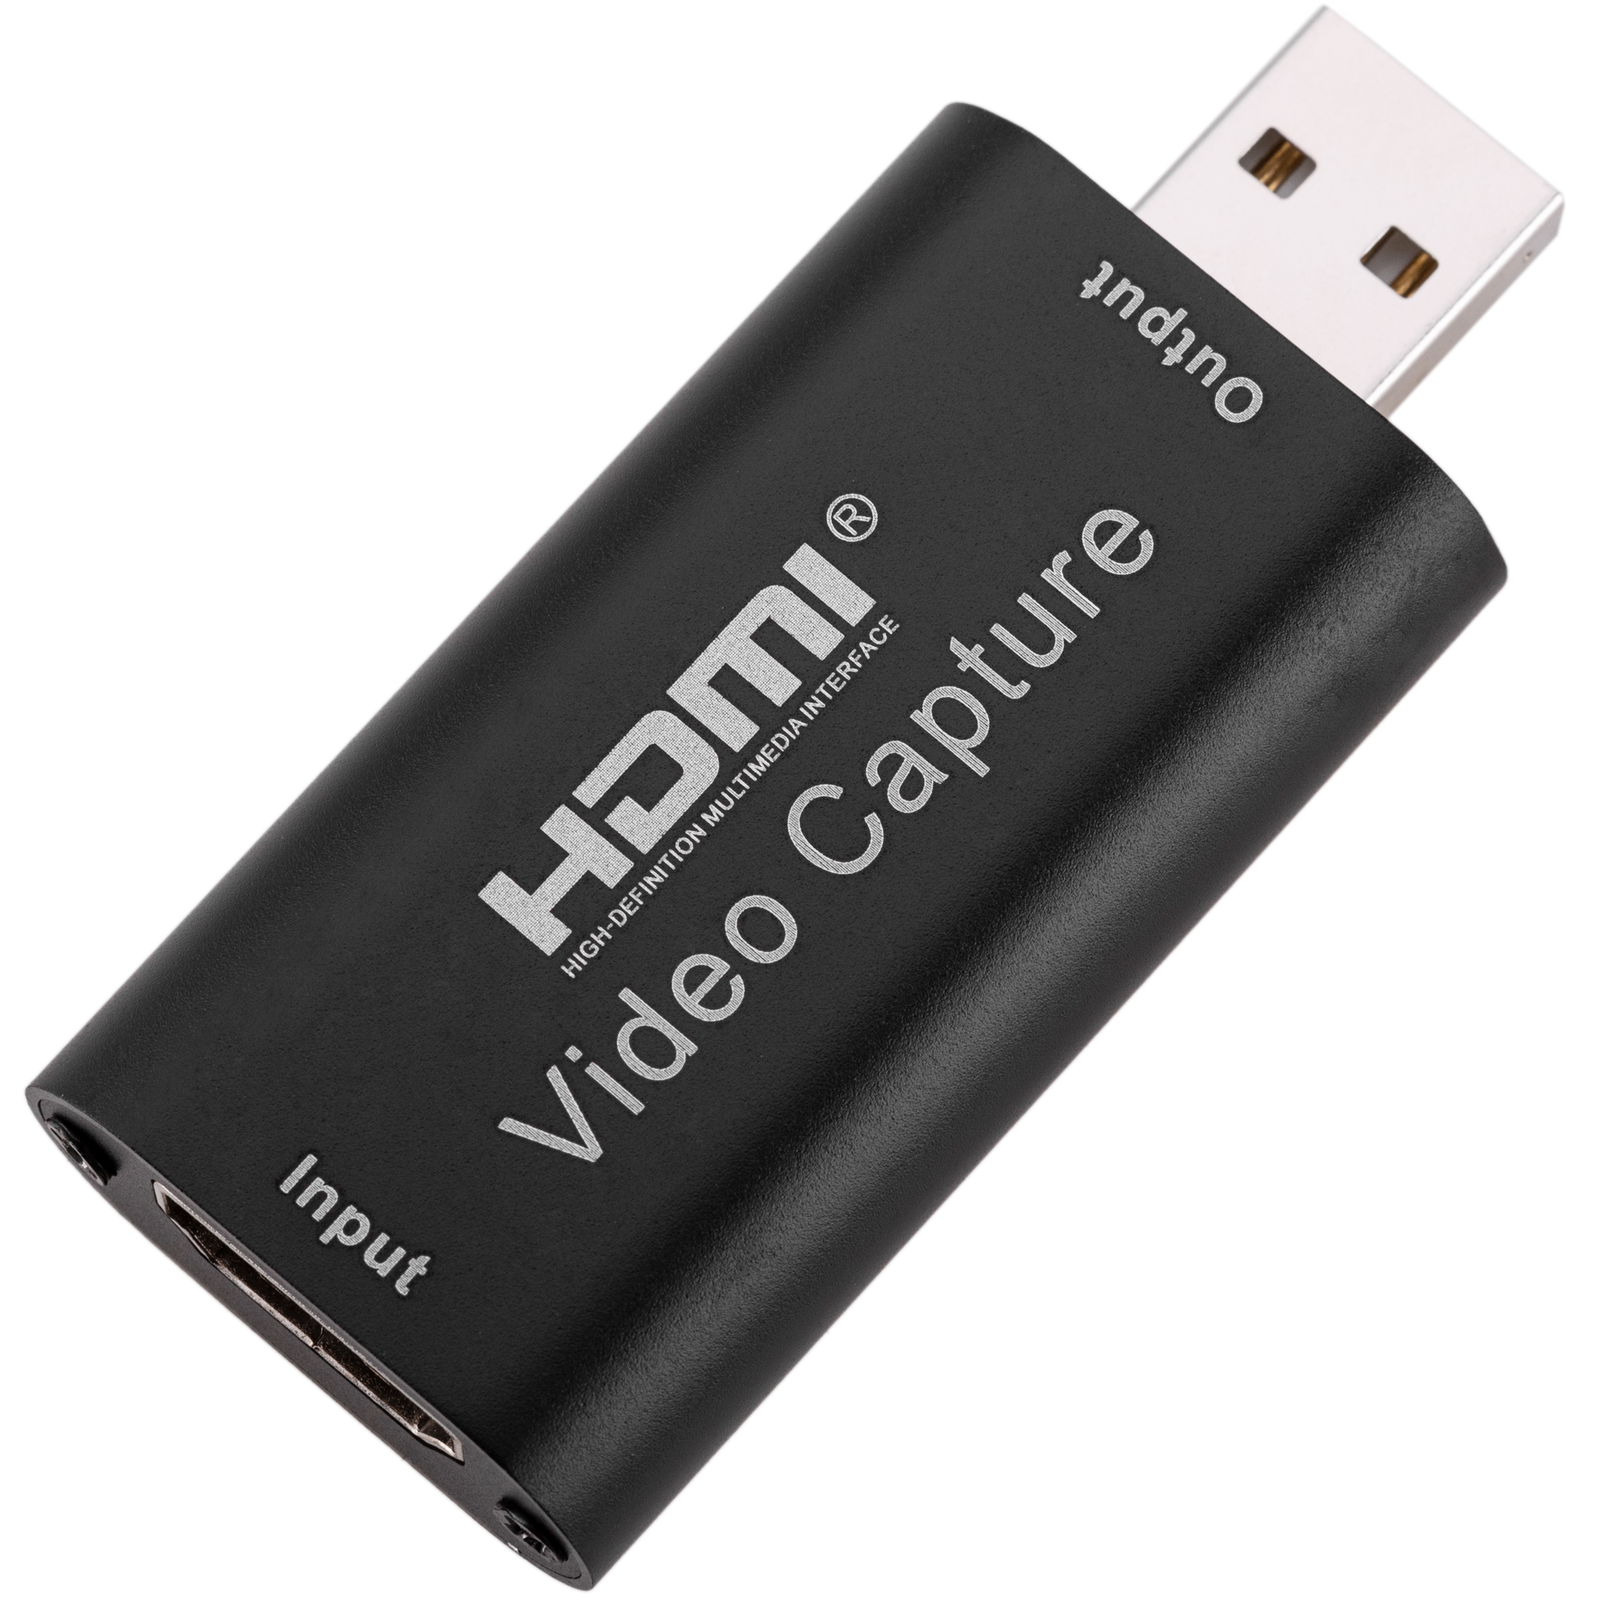 Capturadora De Video / Streaming De Hdmi A Usb, 1080p GENERICO